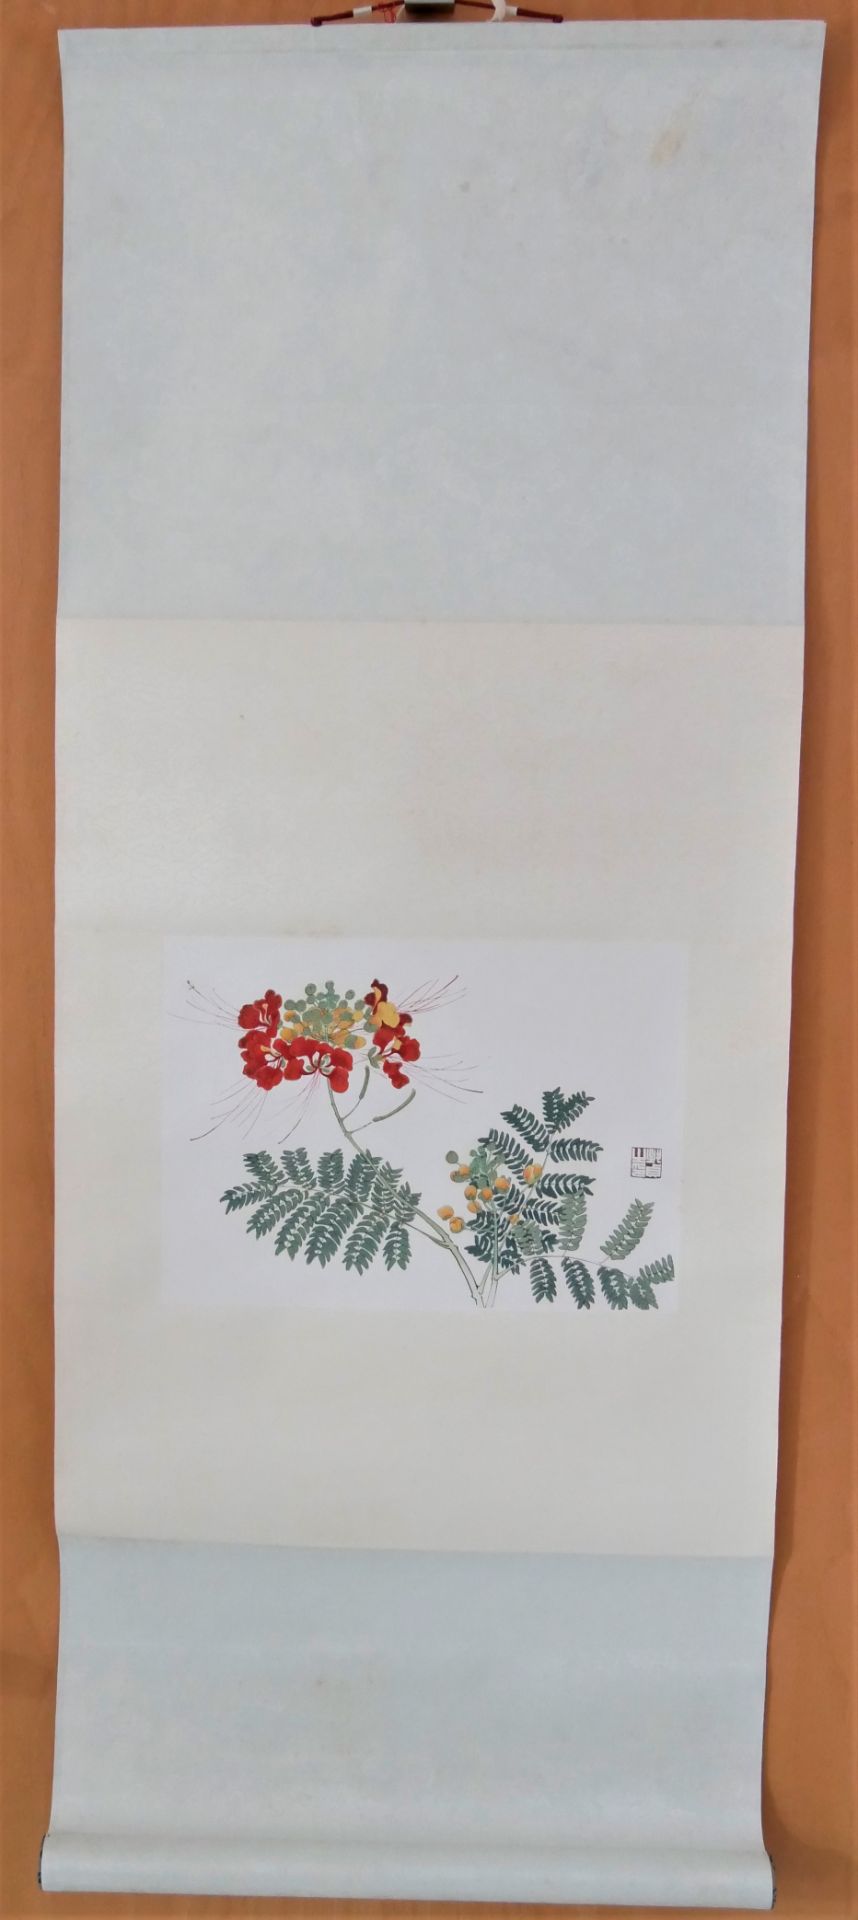 Yu Chih-chen (1965-) - Phoenix Flower, Aquarell auf Papier, auf Rolle.